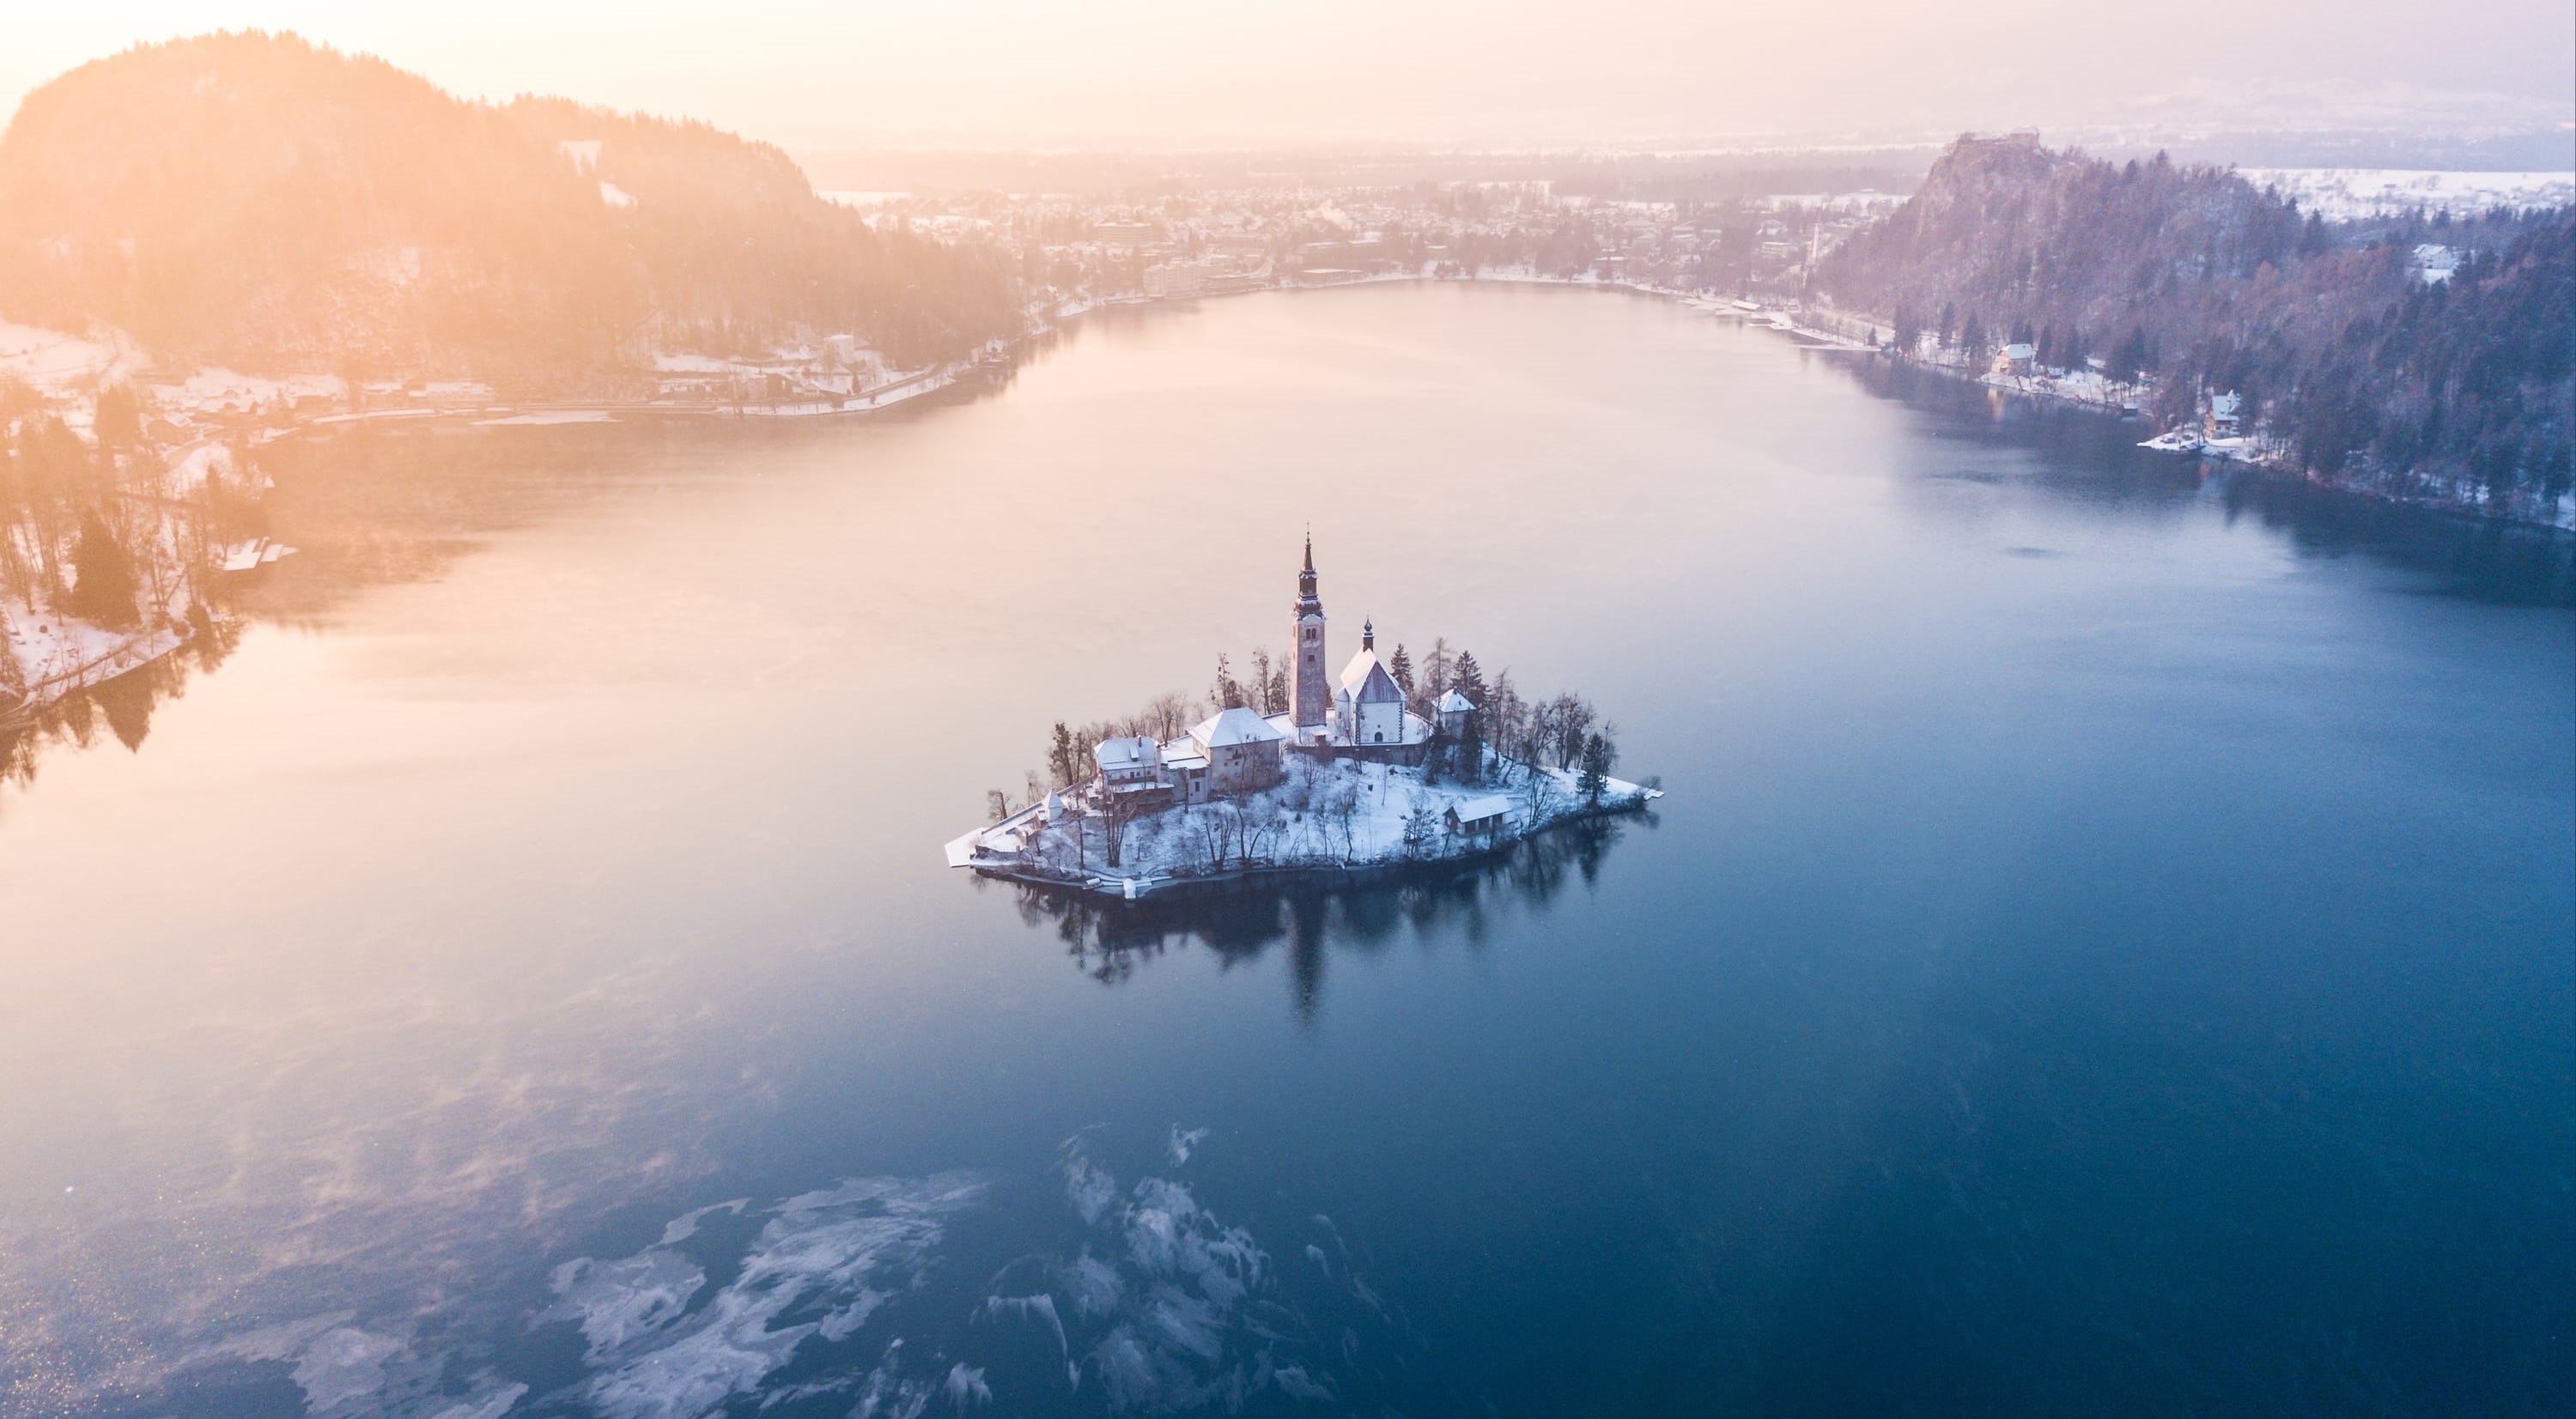 Među 10 zimi najomiljenijih gradova u svijetu na Instagramu (Lonely Planet)